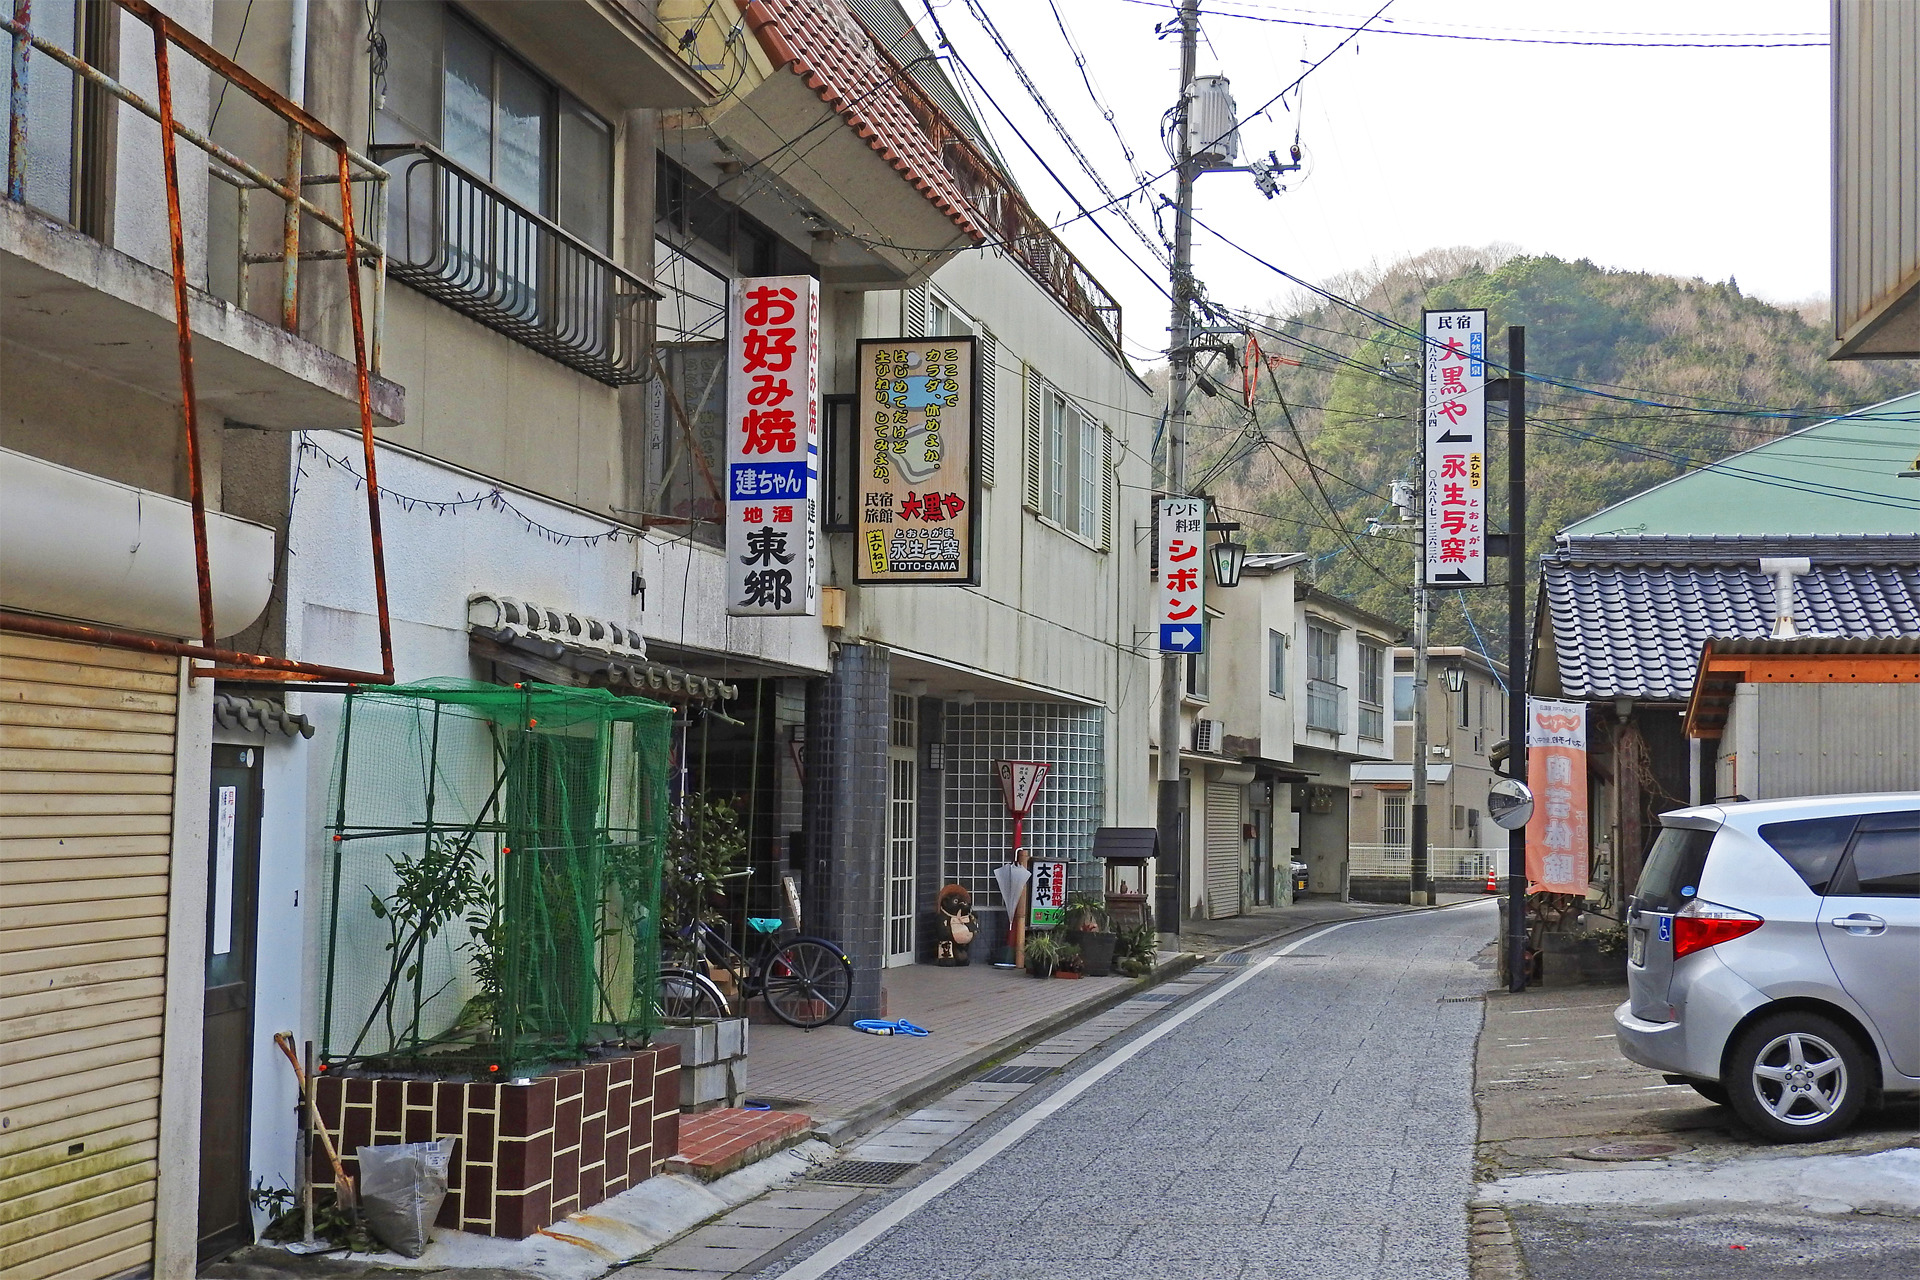 日本の風景 昭和レトロな街並み 湯郷温泉 壁紙19x1280 壁紙館